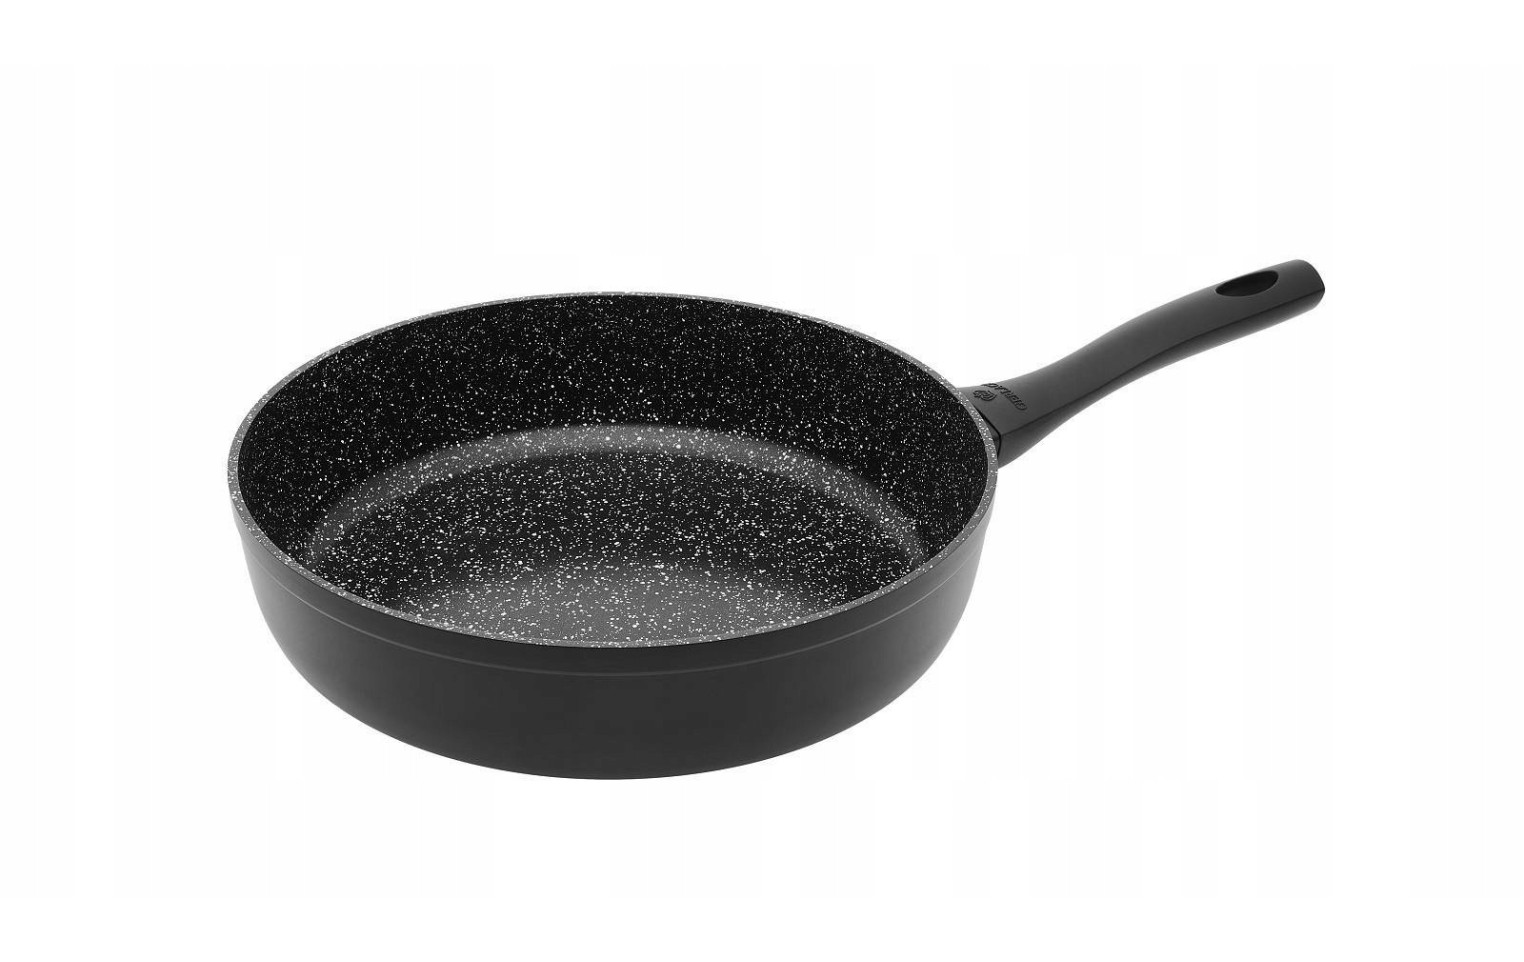 GRANITEX 28 cm deep frying pan with ceramic coating | Gerlach